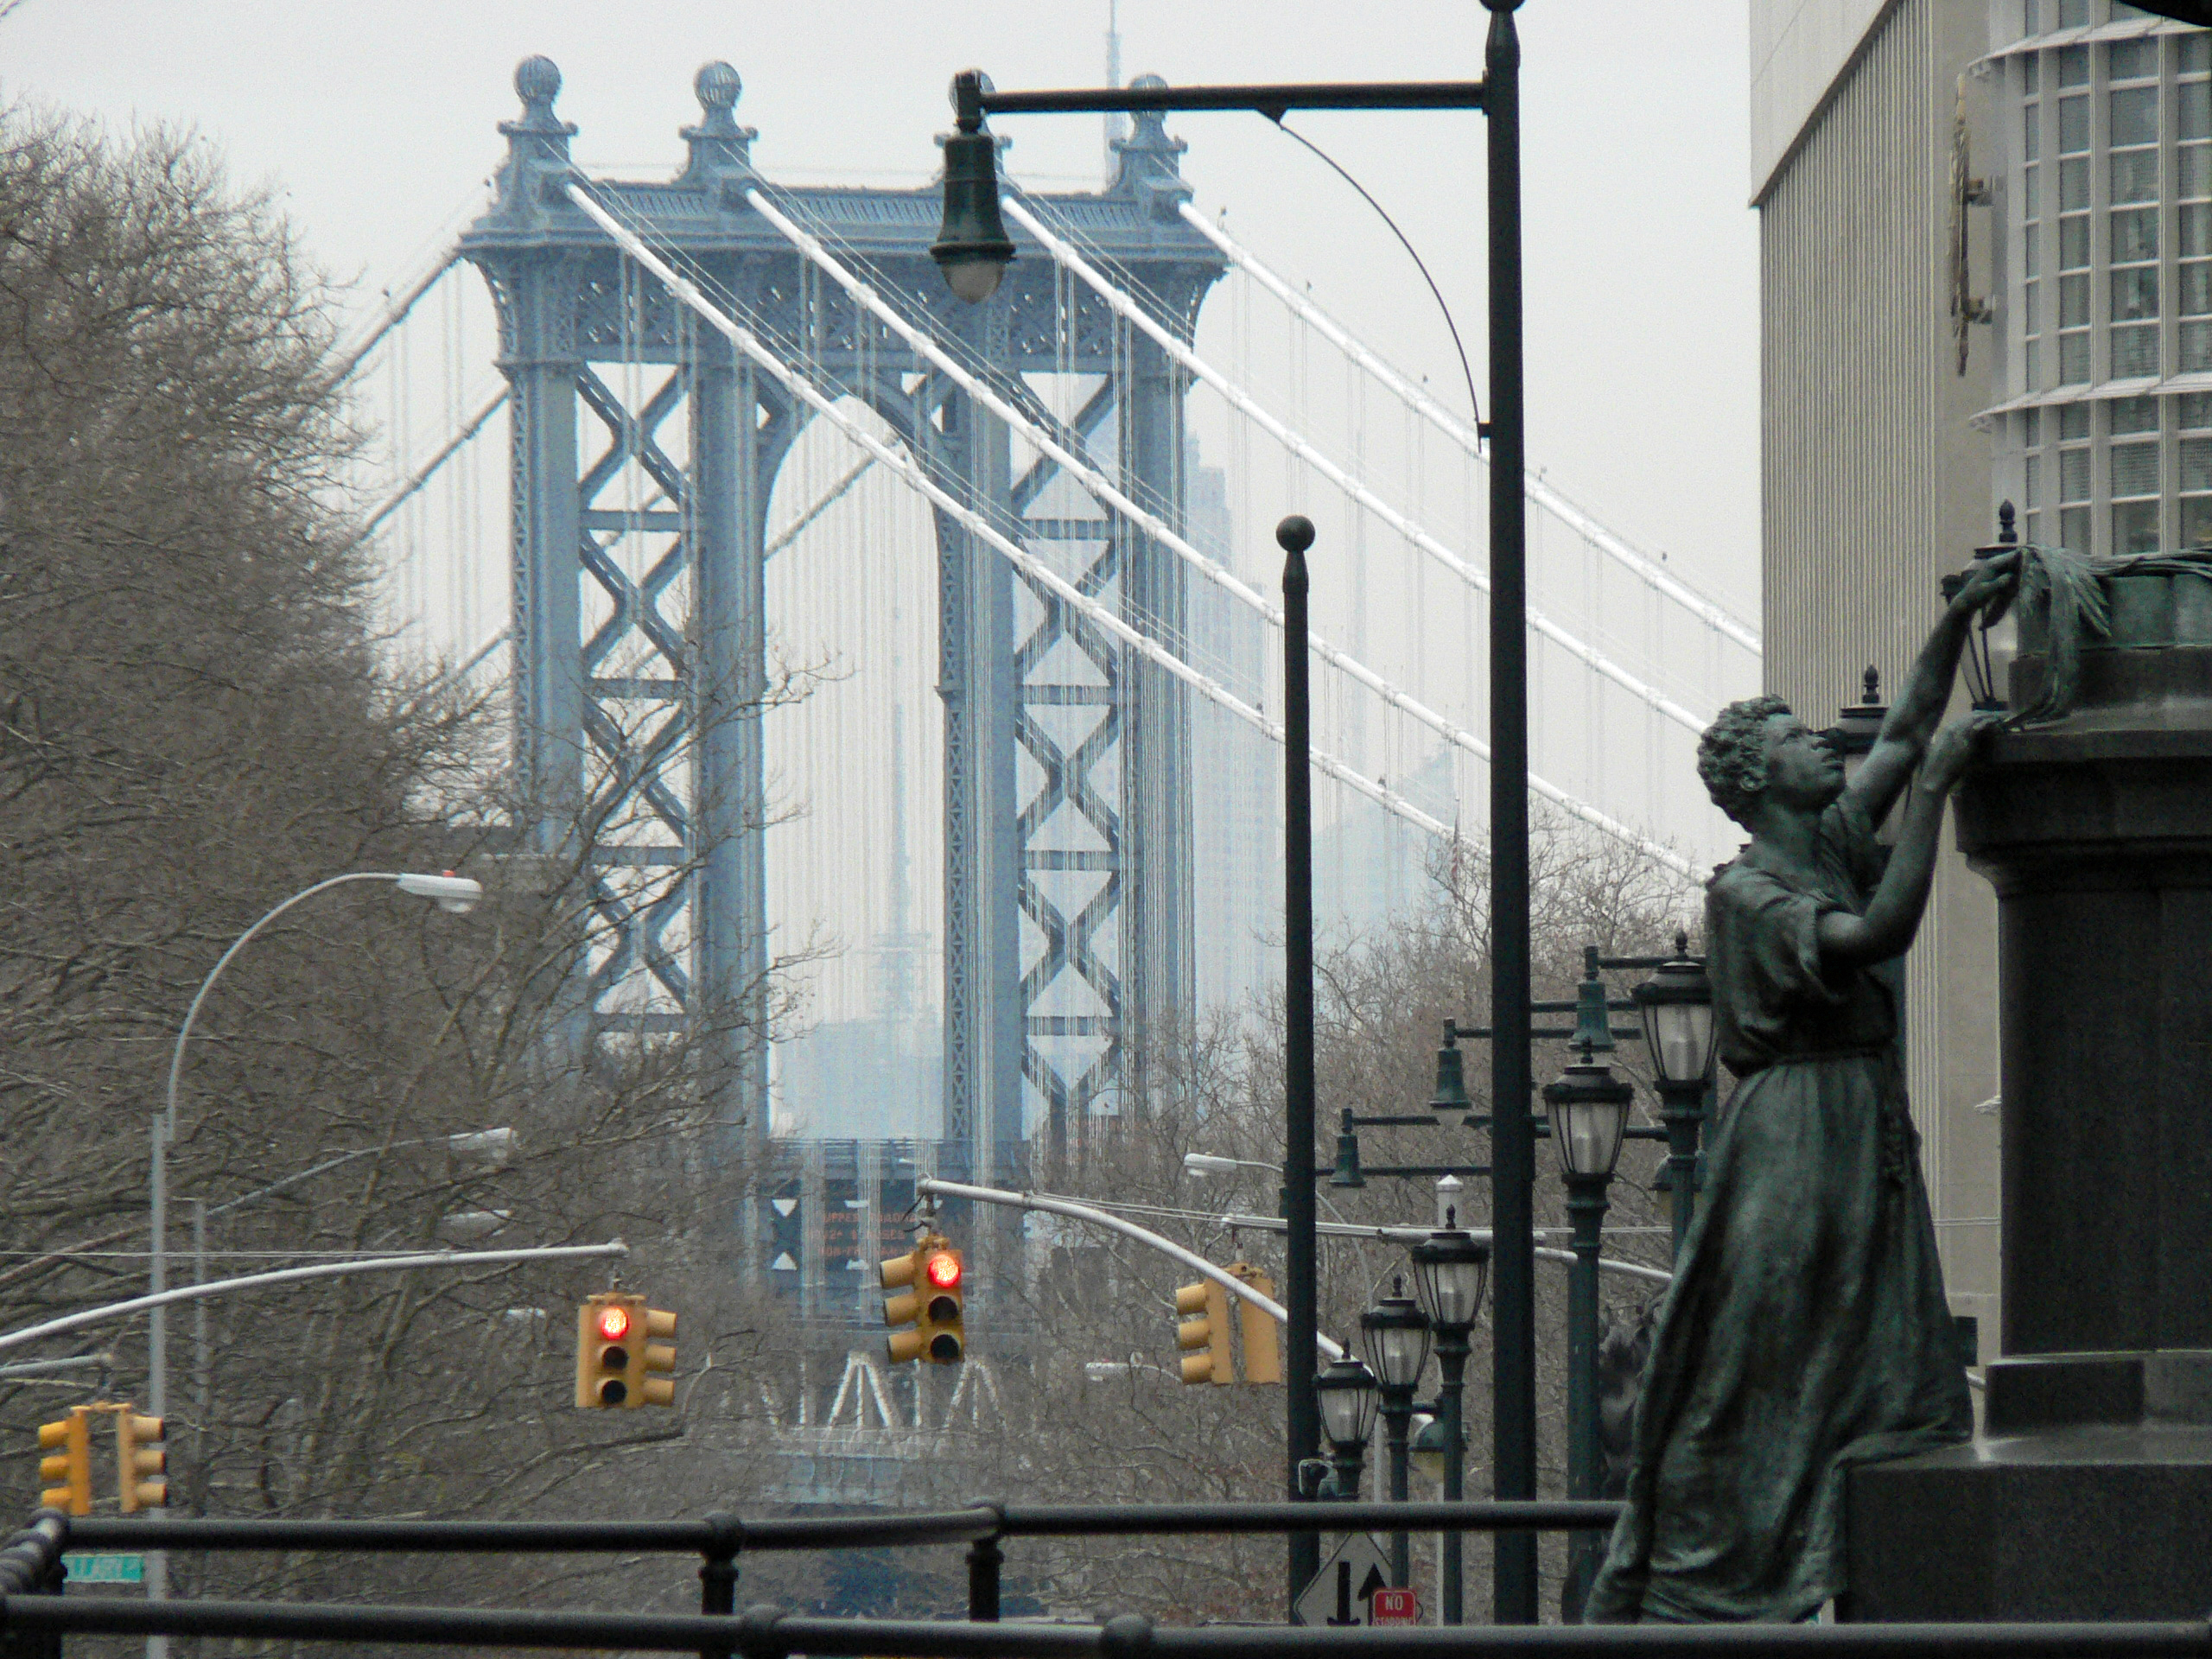 Manhattan Bridge with Ward statue